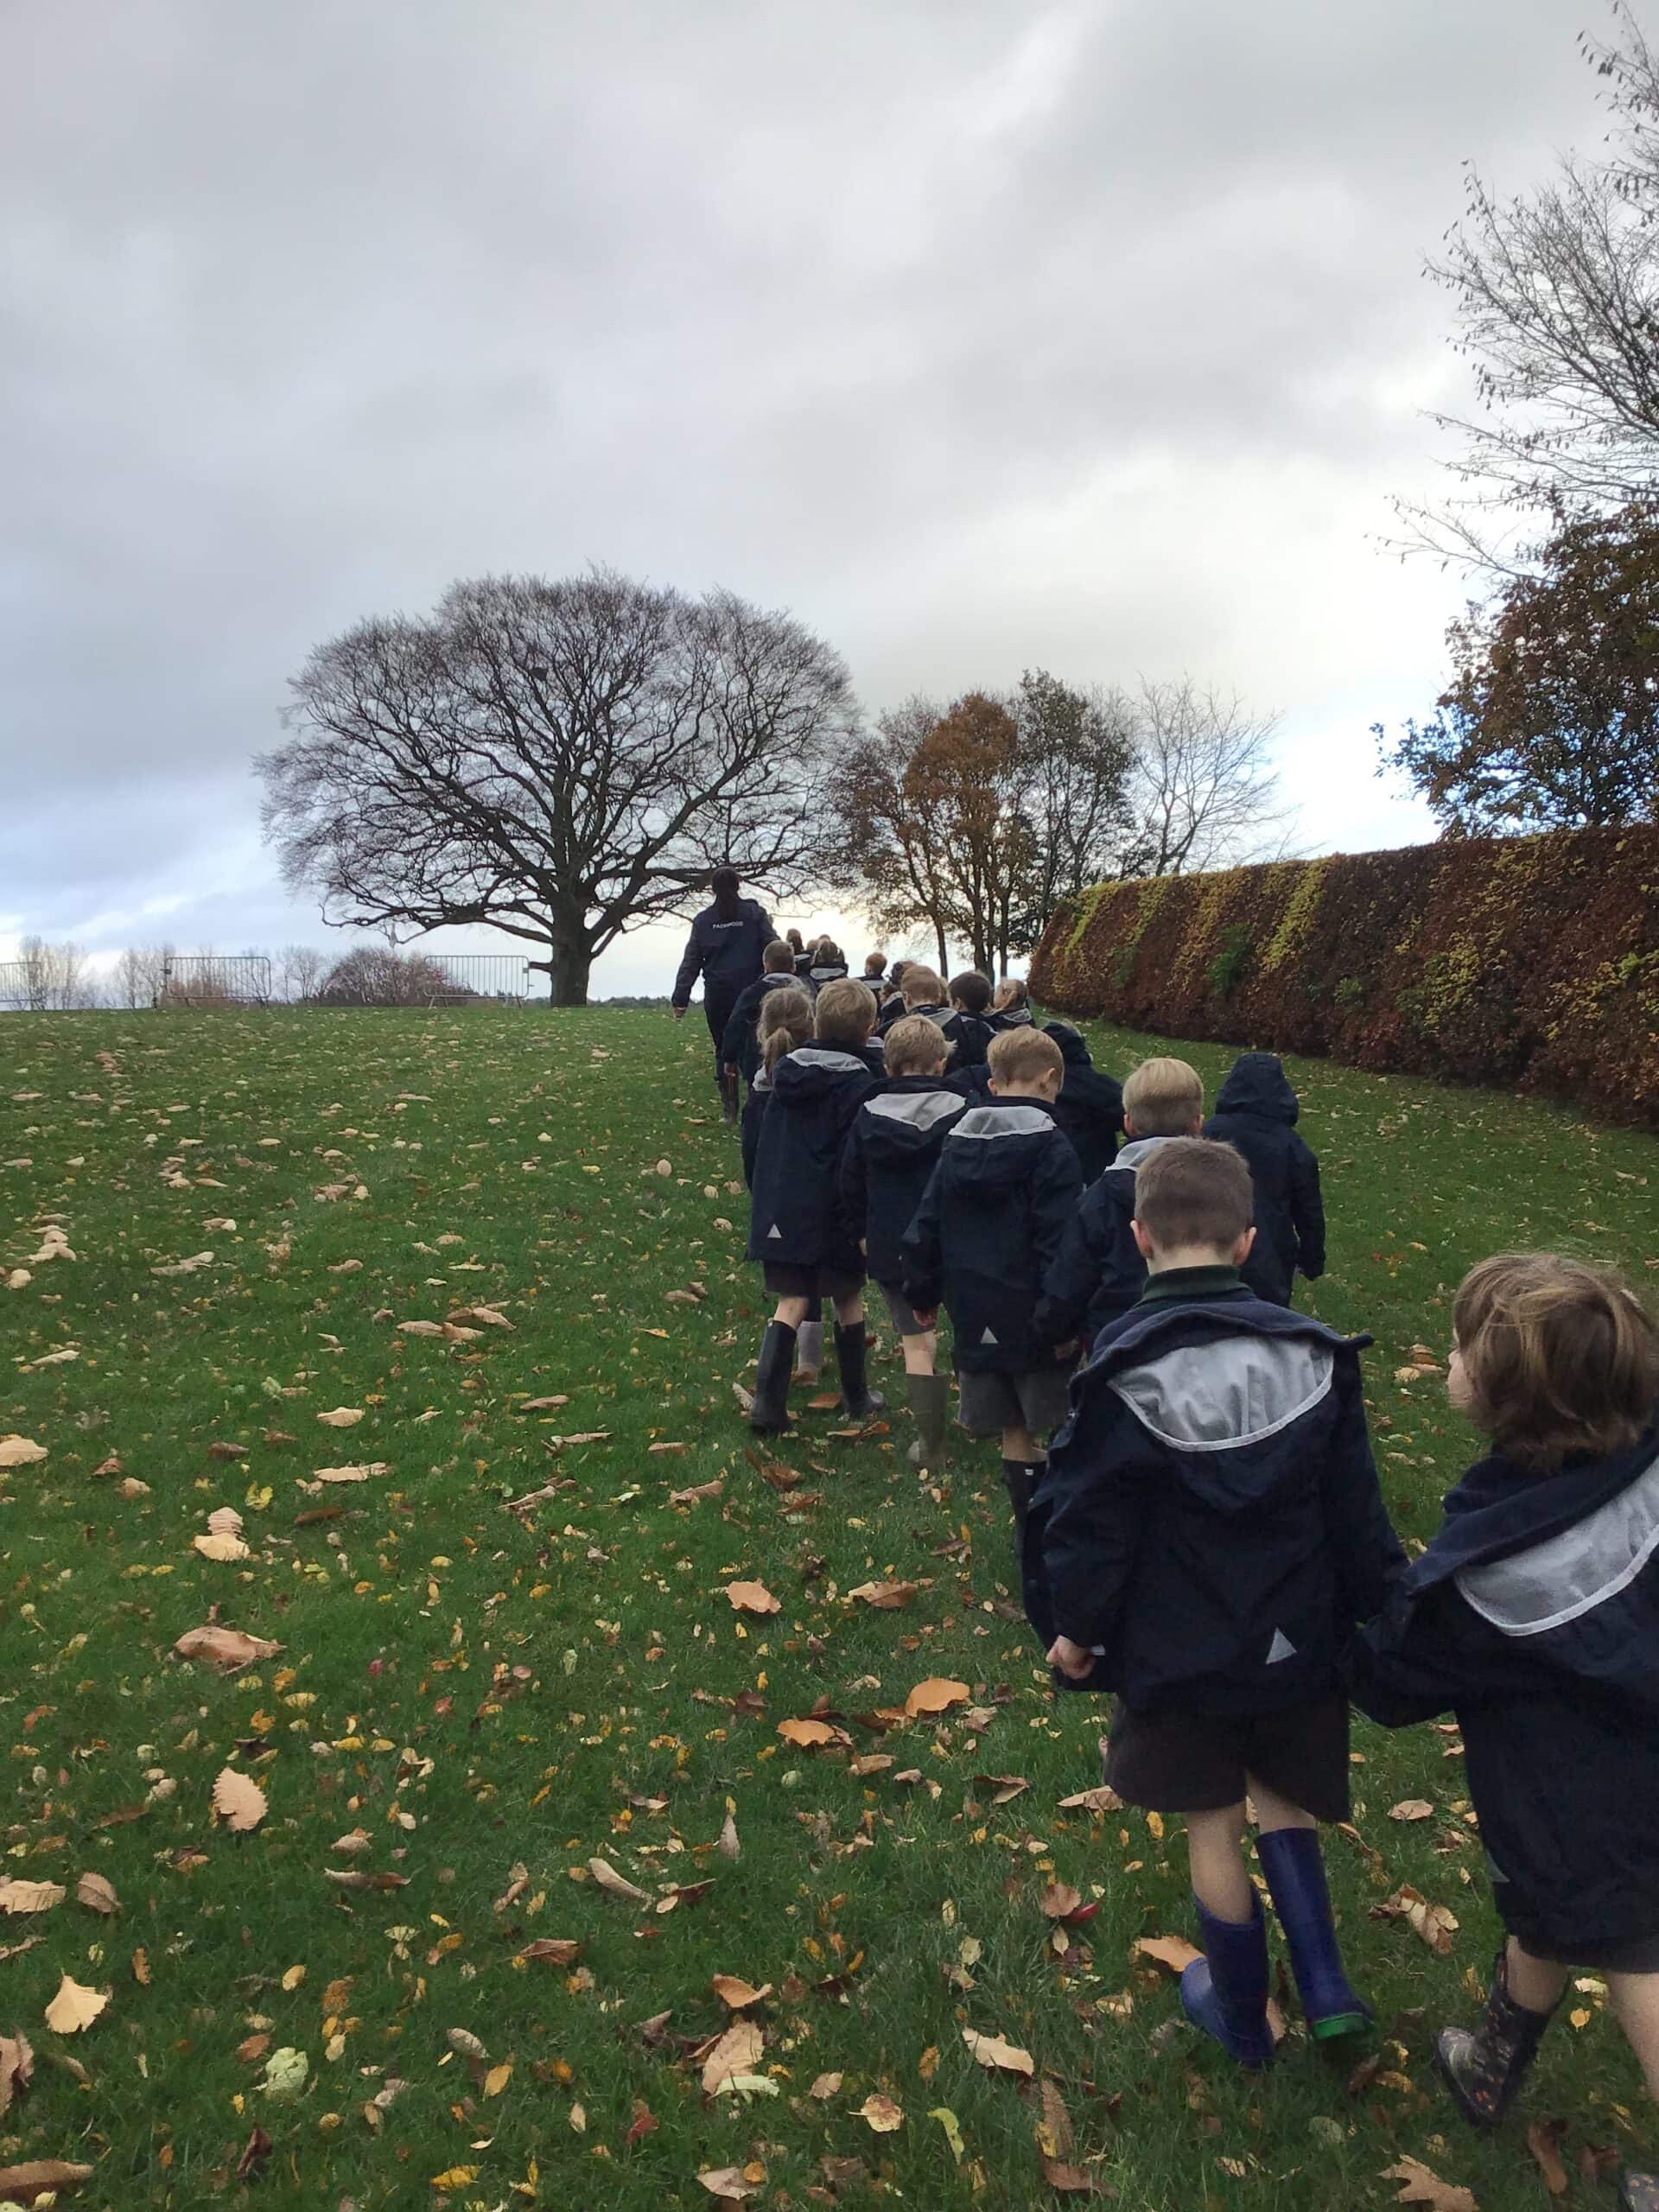 Pupils walking through a field